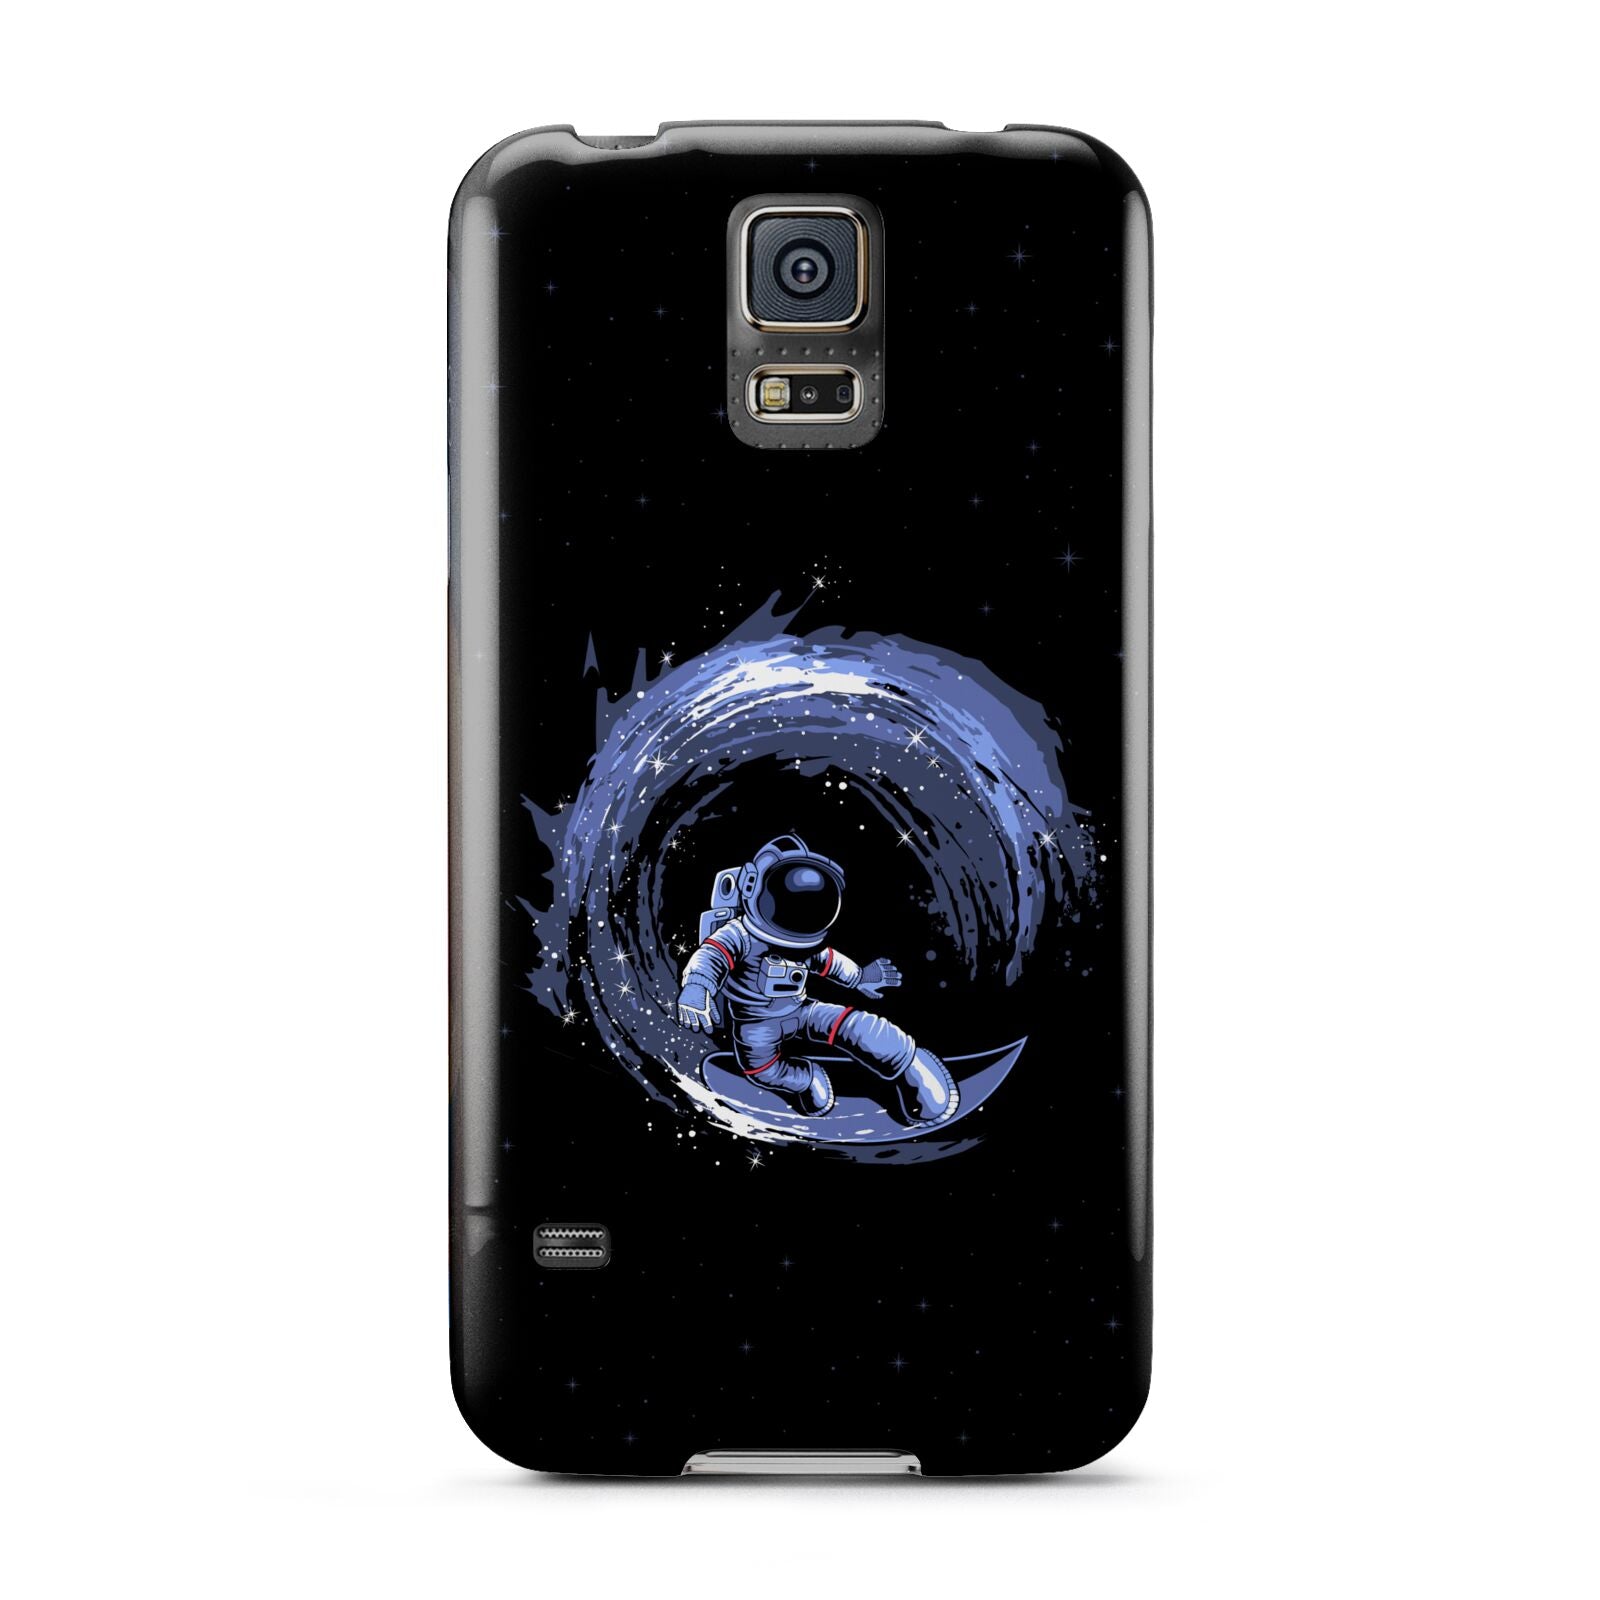 Surfing Astronaut Samsung Galaxy S5 Case